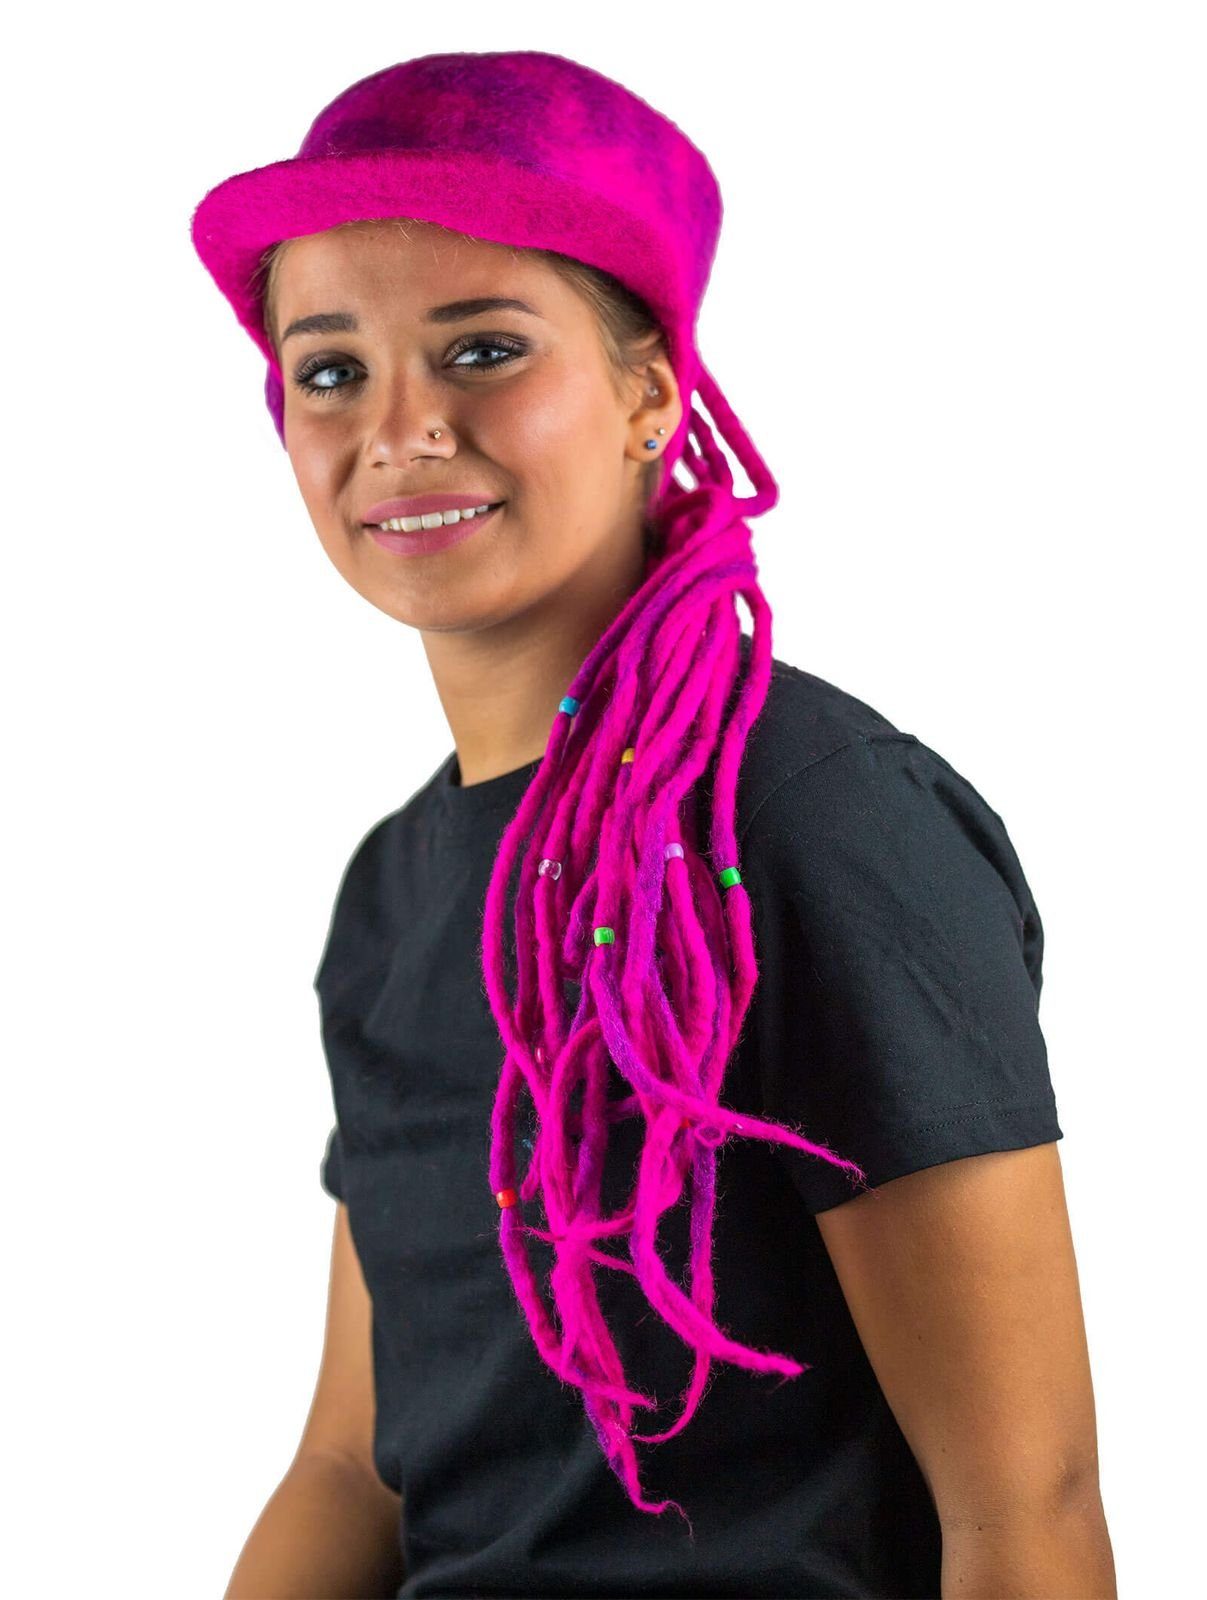 KUNST UND MAGIE Bunter Filzhut Hippie Filz Ballonmütze Magie Pink Dreadlock Kunst Hut und Goa aus